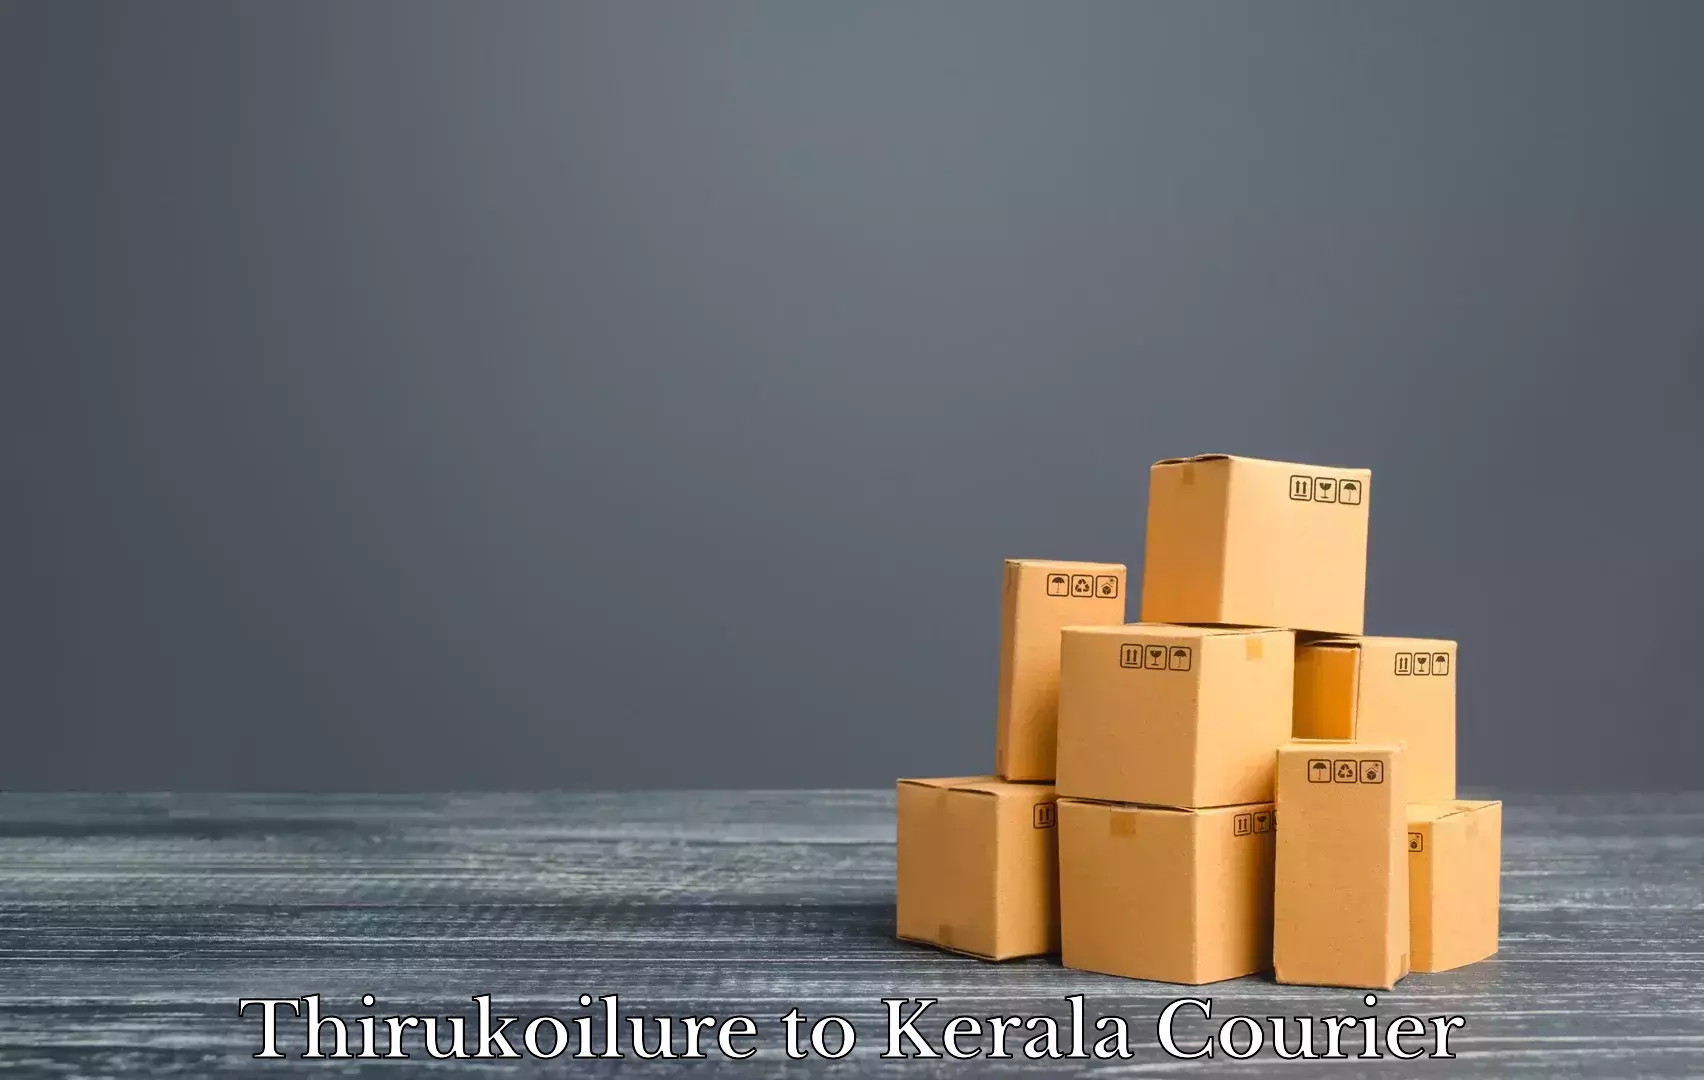 Furniture shipping services Thirukoilure to Kakkur